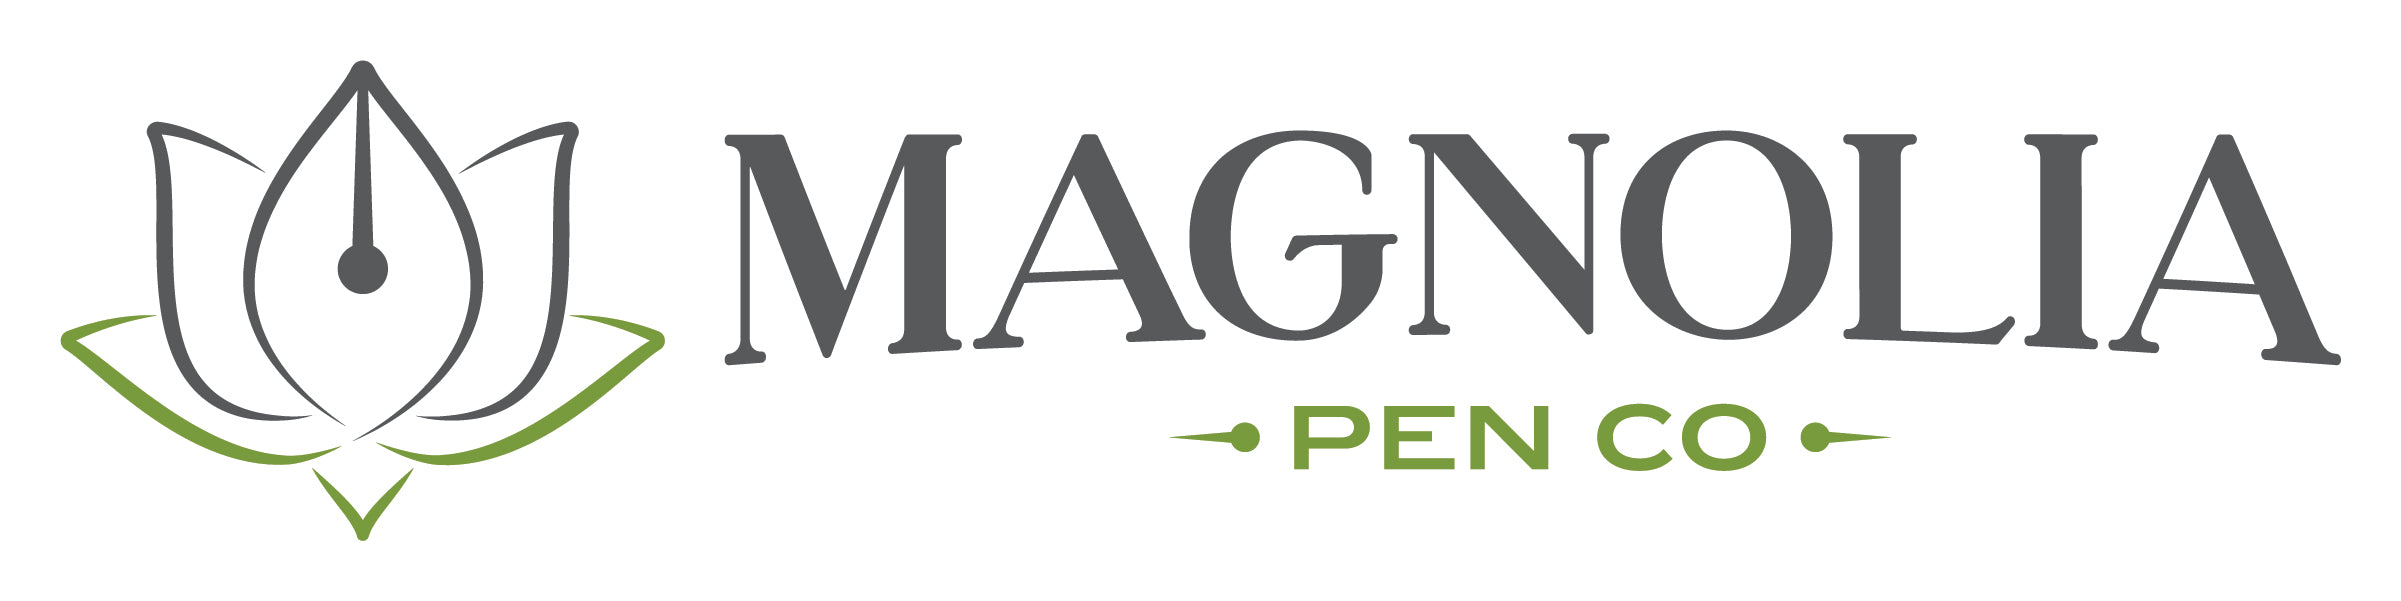 Magnolia Pen Company